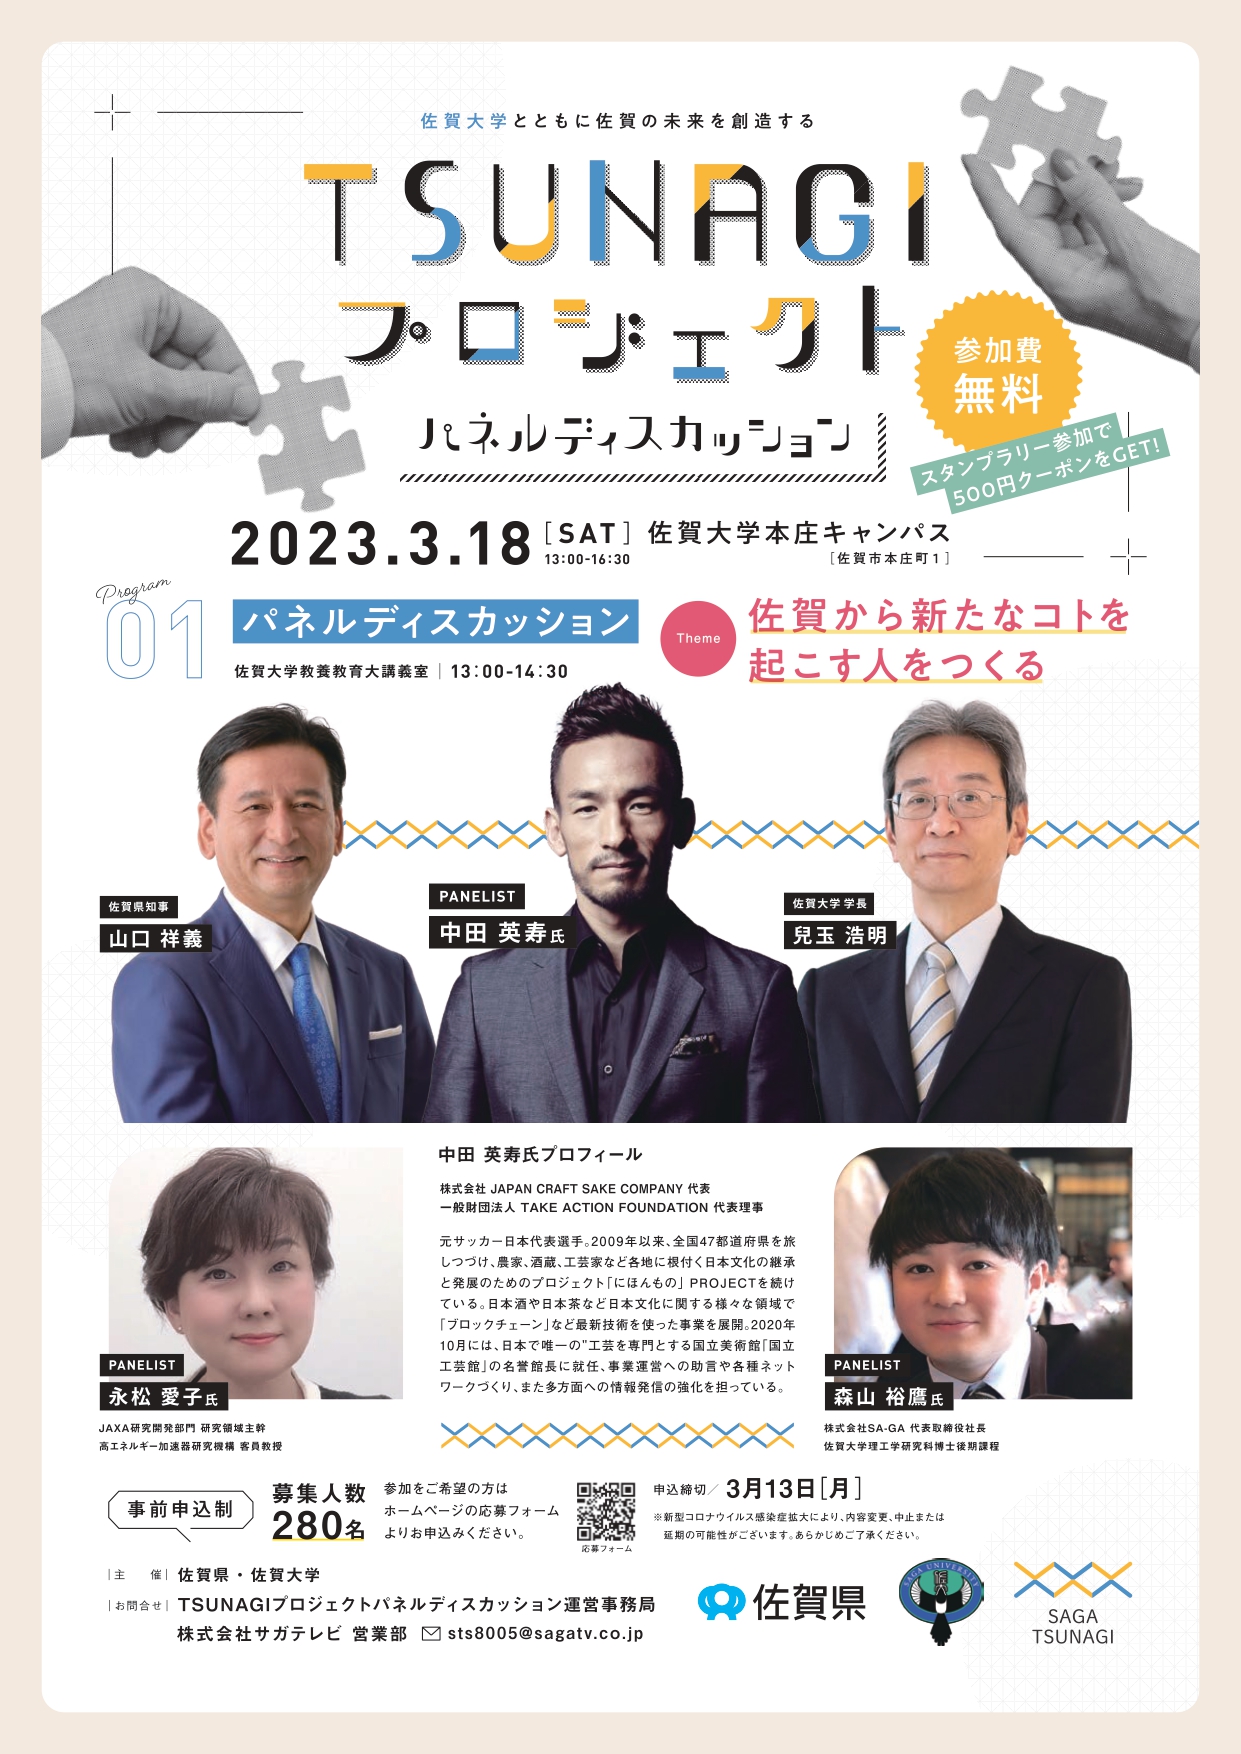 【3月18日】「TSUNAGIプロジェクト パネルディスカッション」の開催について